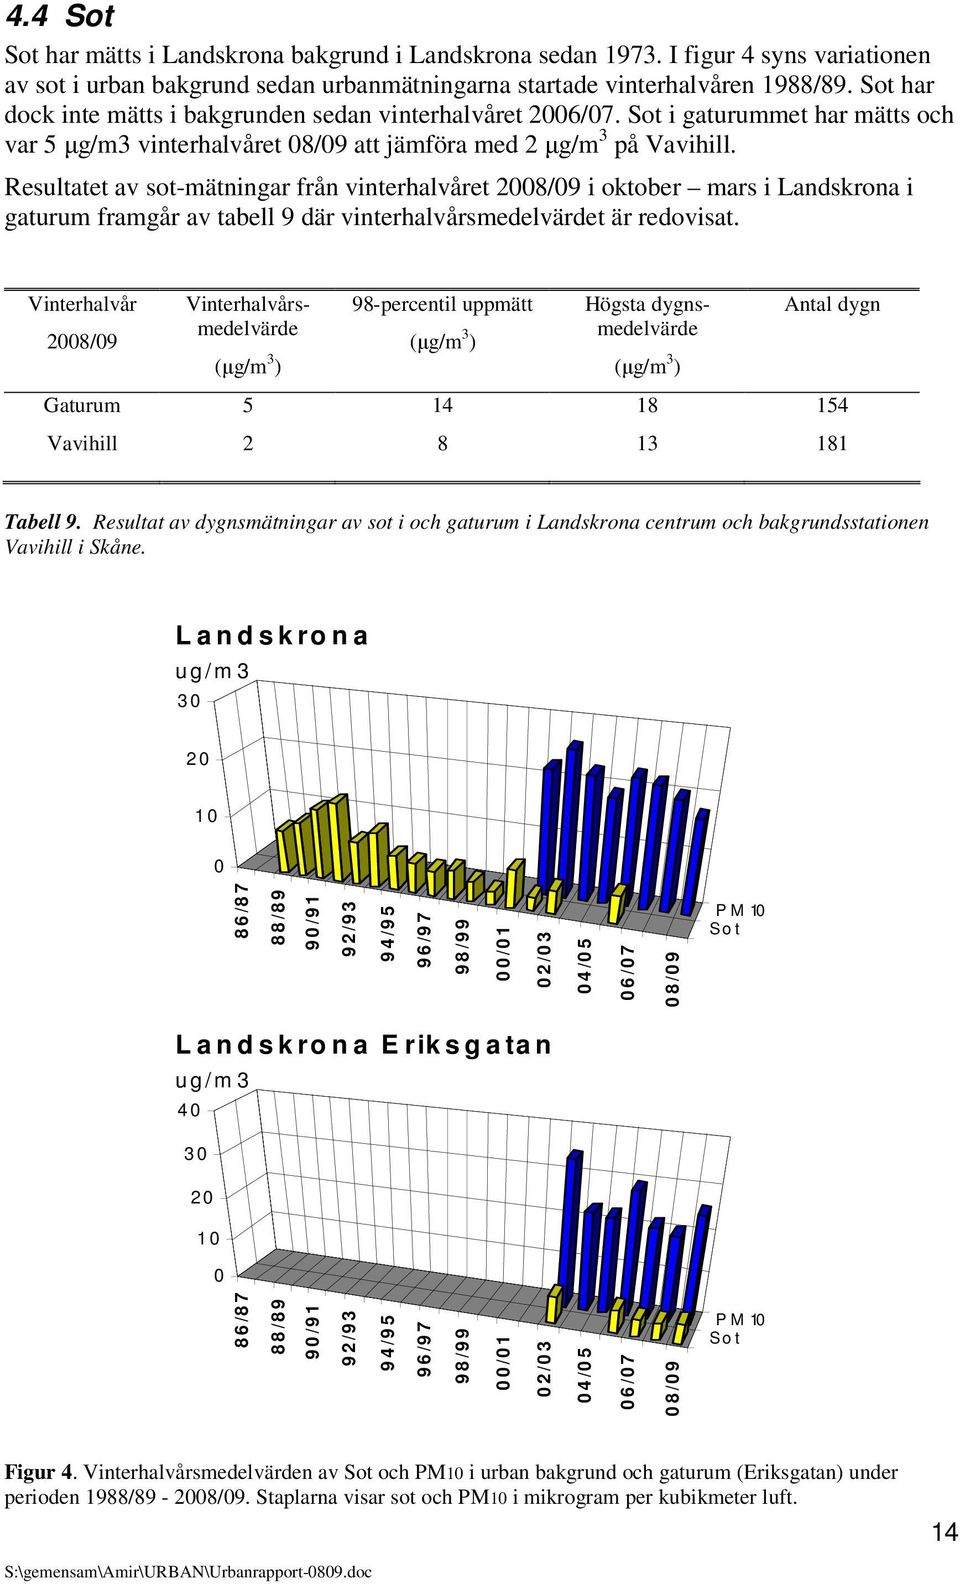 Resultatet av sot-mätningar från vinterhalvåret 2008/09 i oktober mars i Landskrona i framgår av tabell 9 där vinterhalvårsmedelvärdet är redovisat.